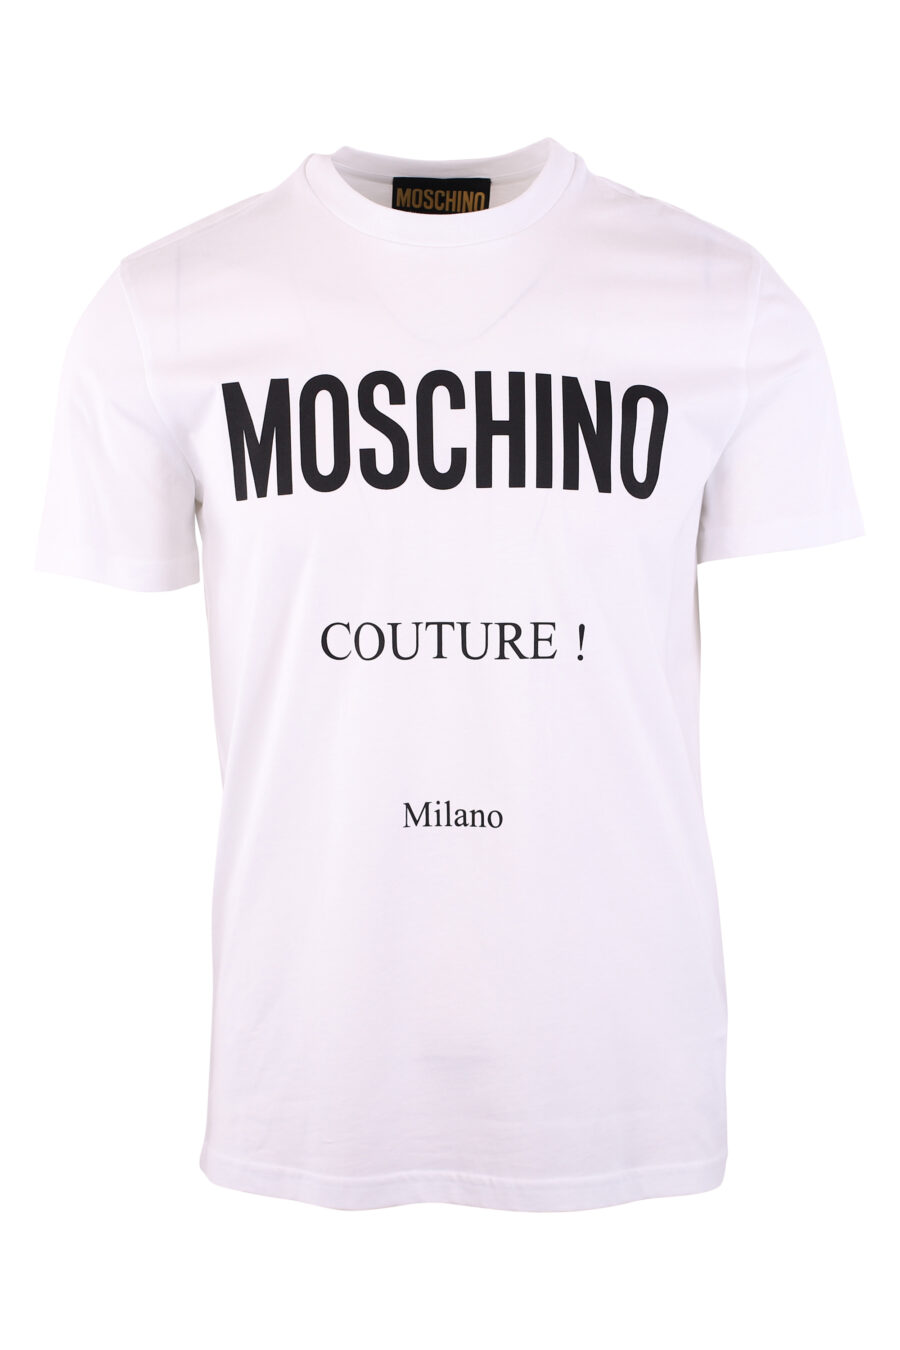 T-shirt branca com o logótipo "fantasy" de Milão - IMG 3125